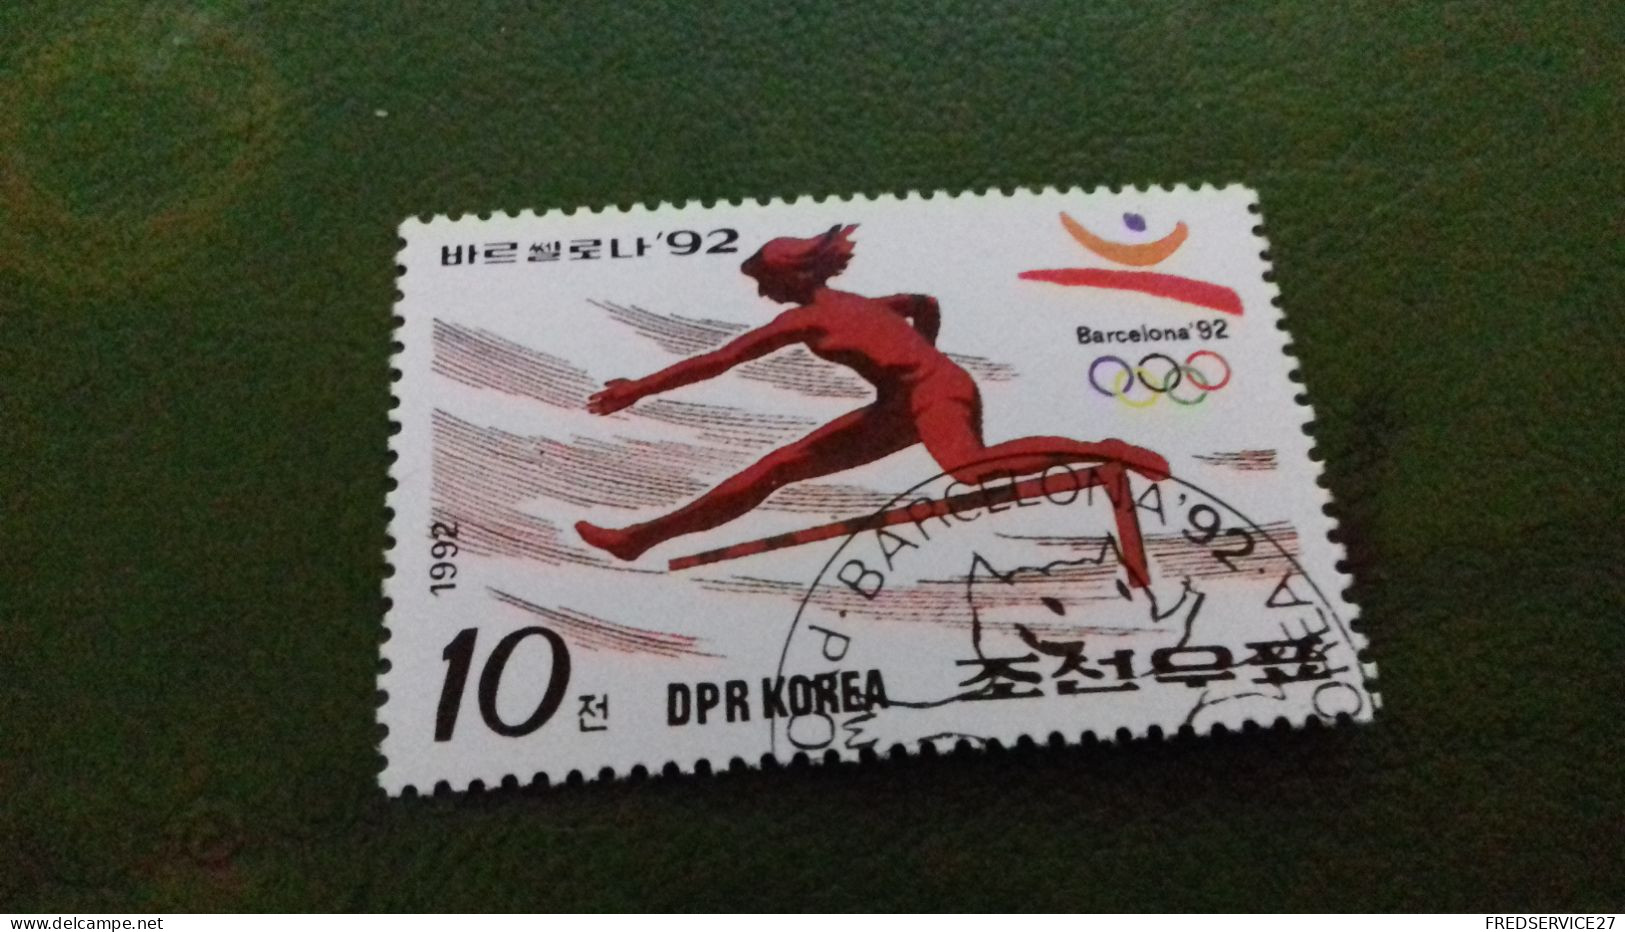 TIMBRE DPR KOREA BARCELONA 92 - Korea (Nord)